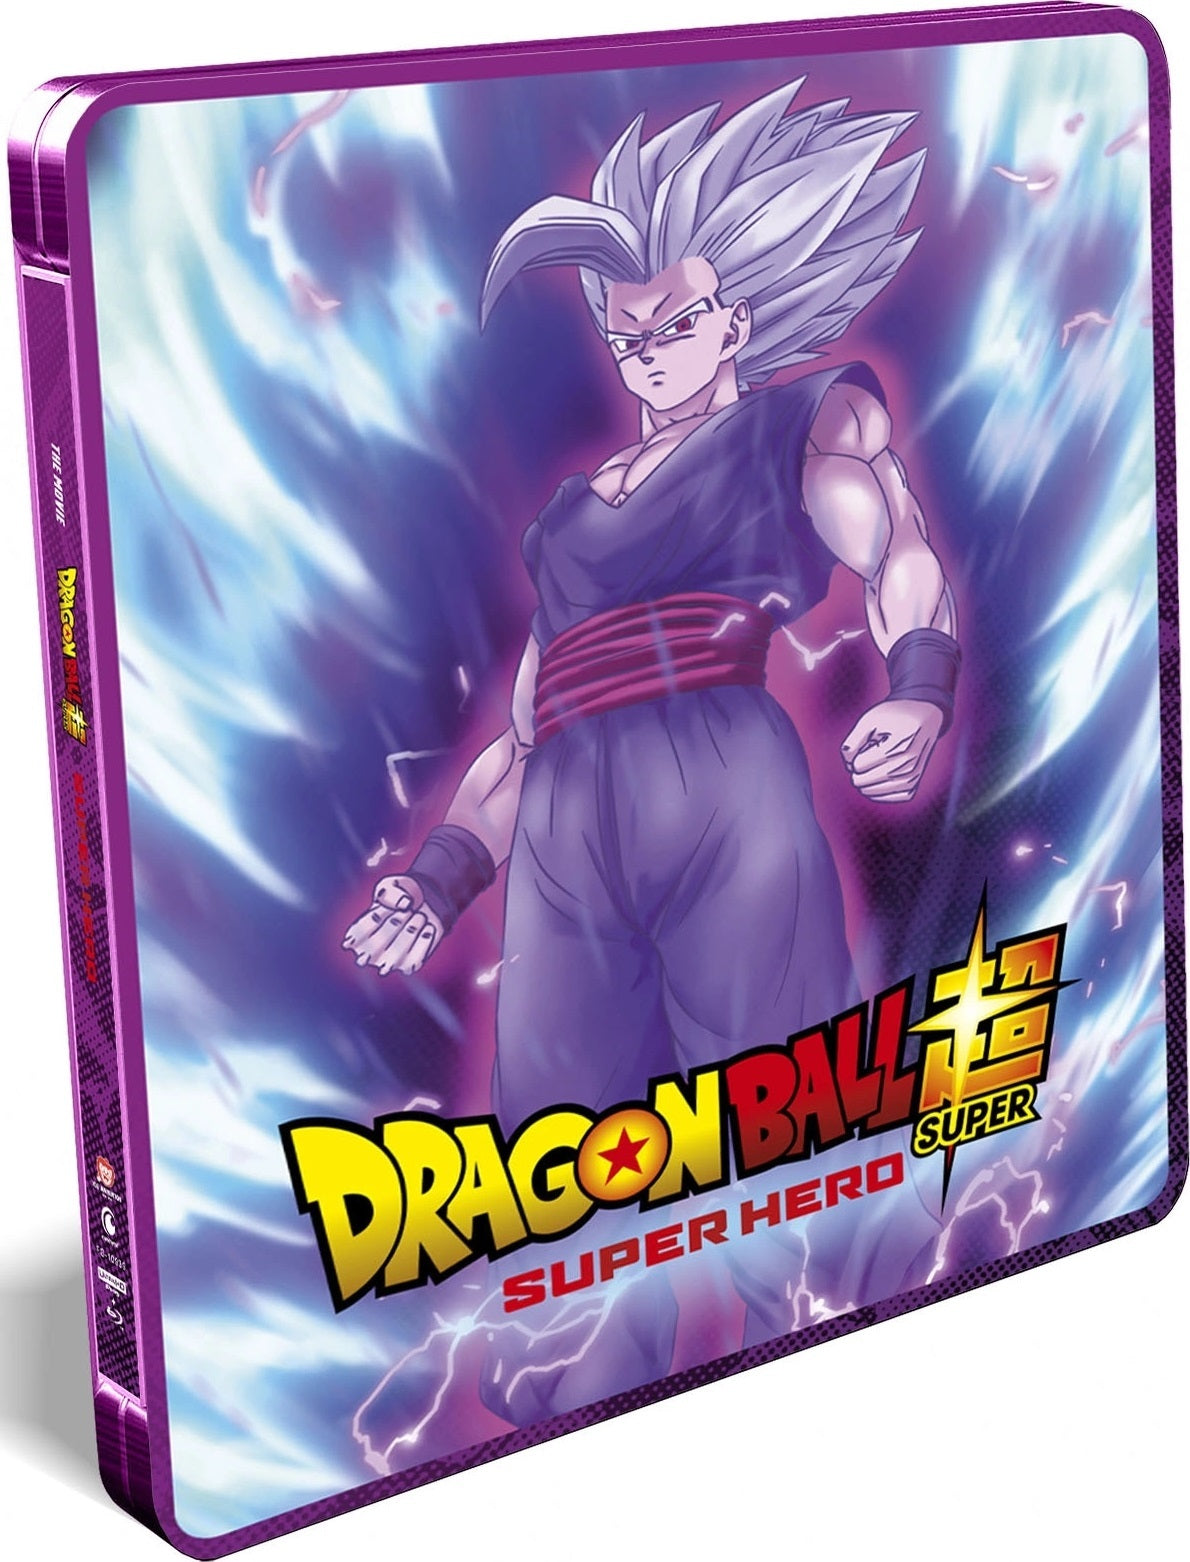 Dvd Dragon Ball Heroes Anime